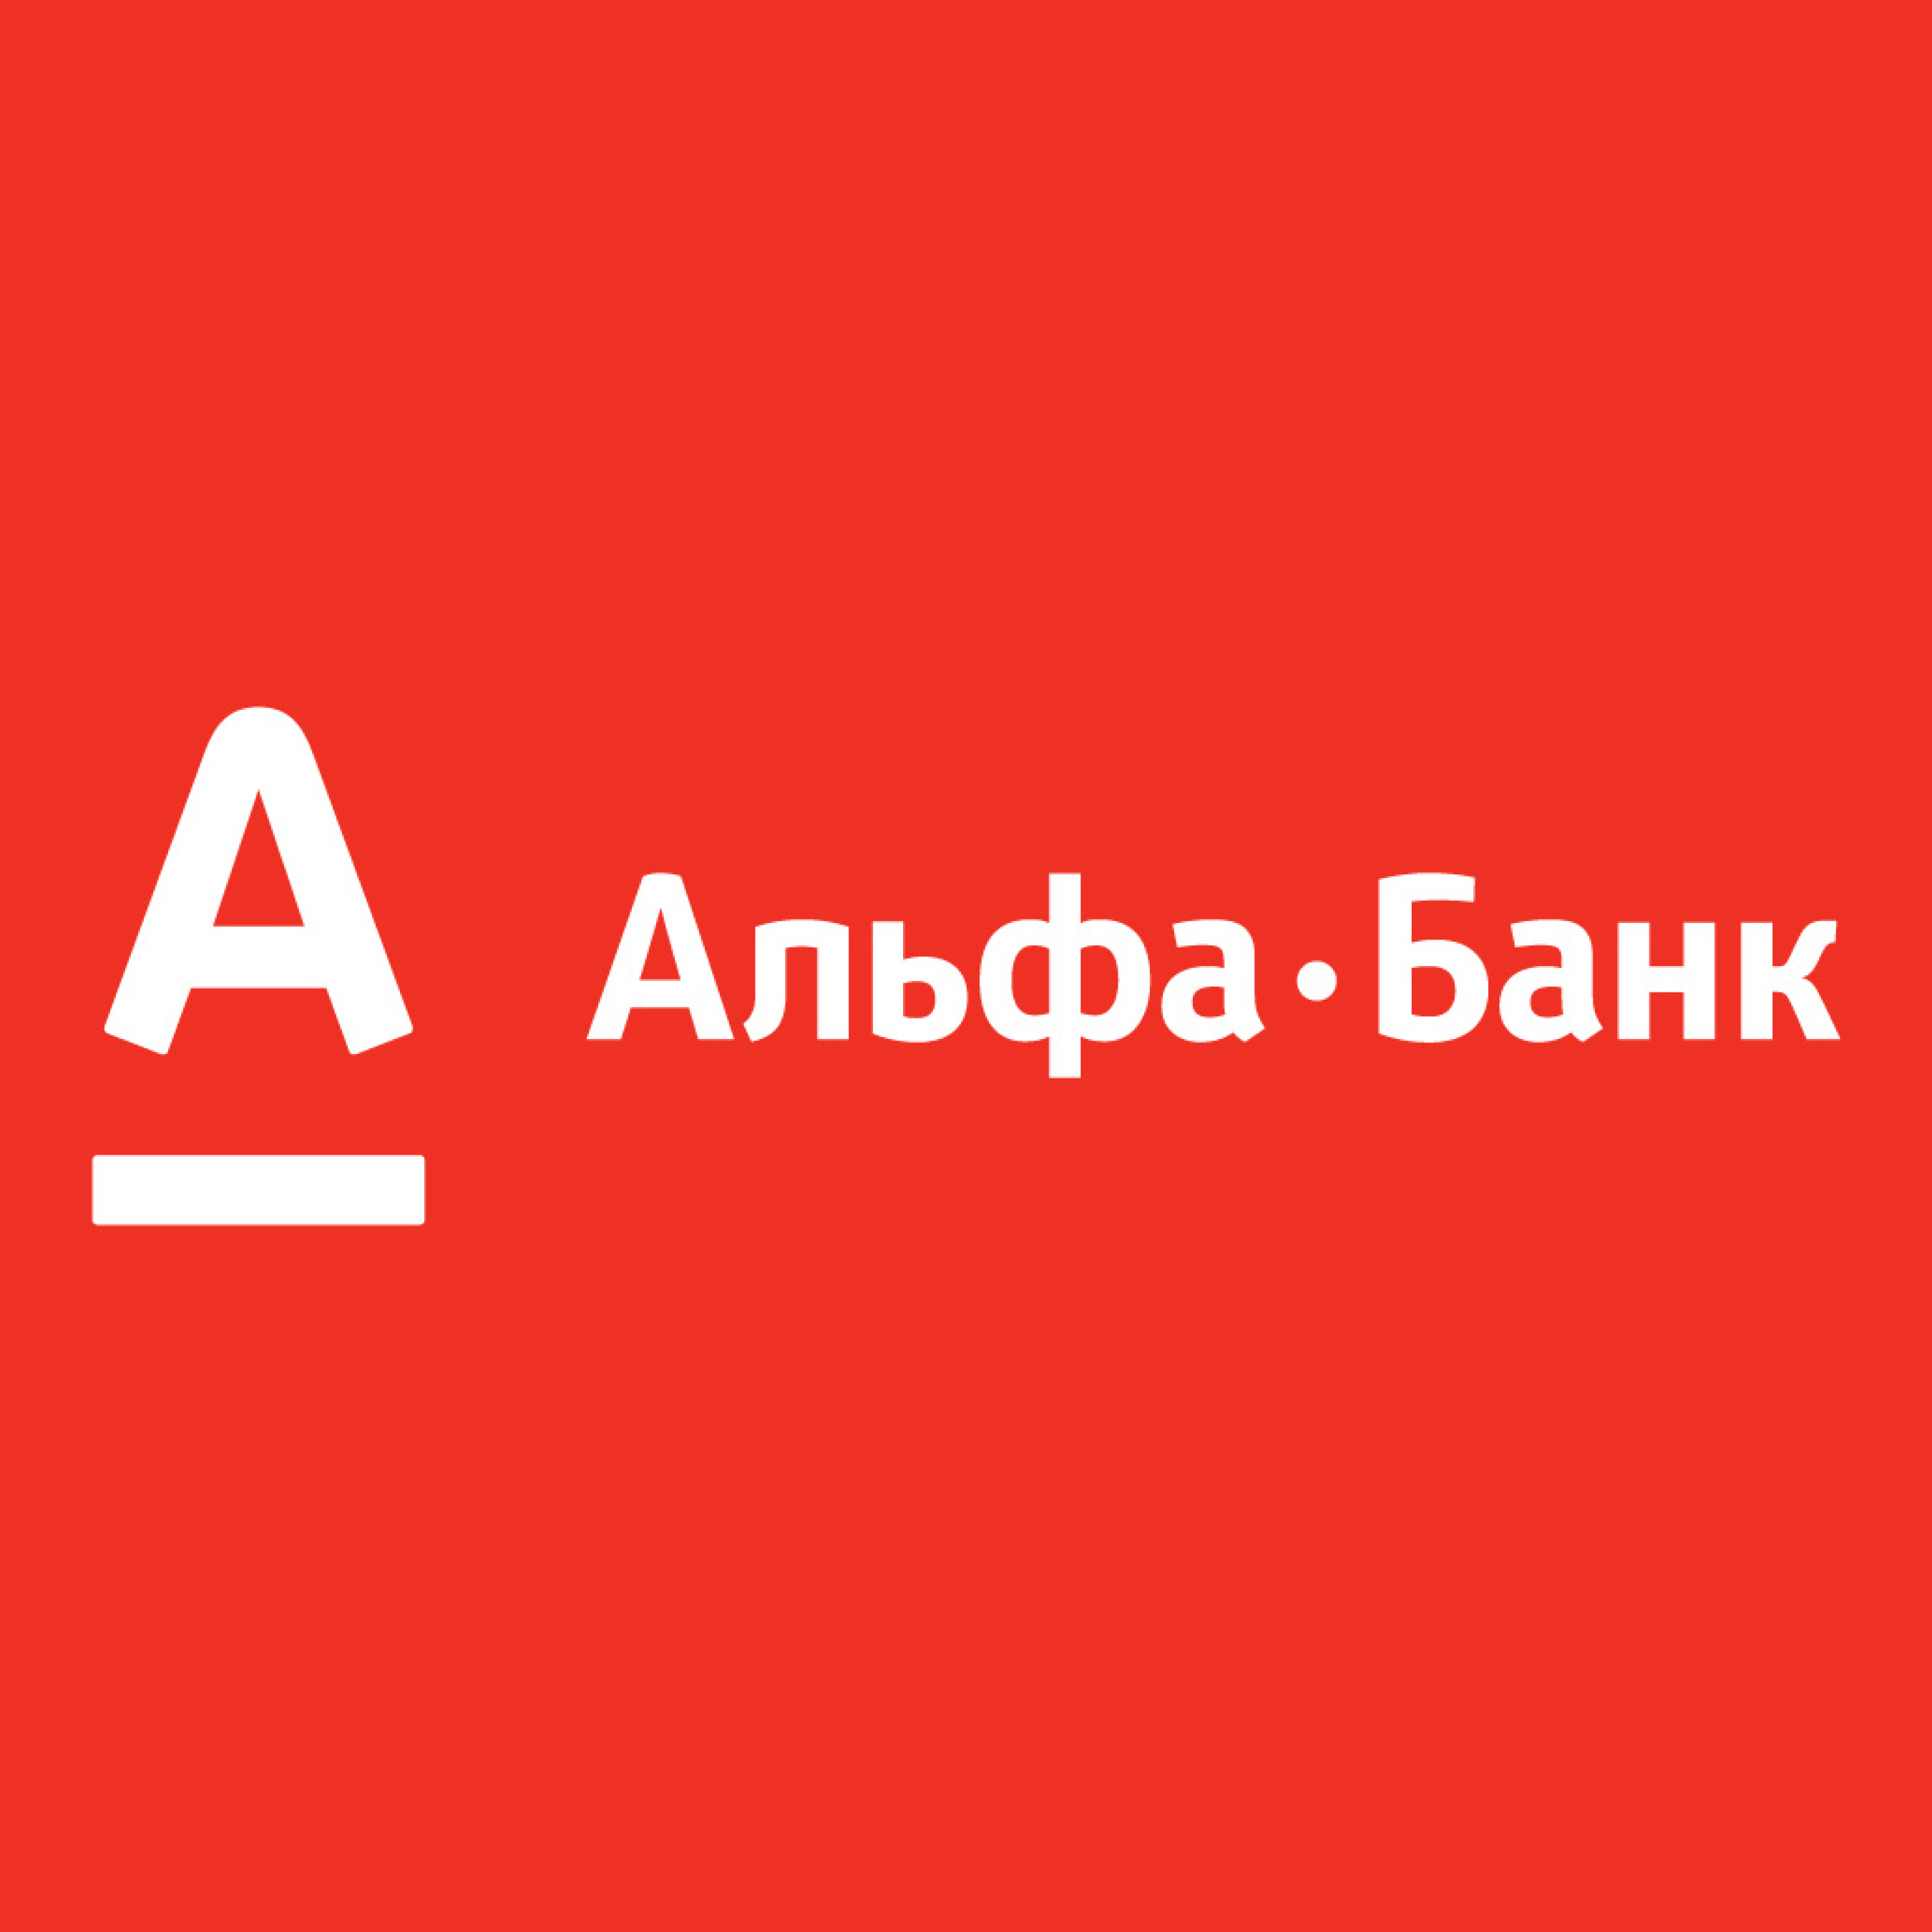 Альфа банк. Логотип банка Альфа банк. Альфа банк Казахстан логотип. Альфа банк логотип новый.